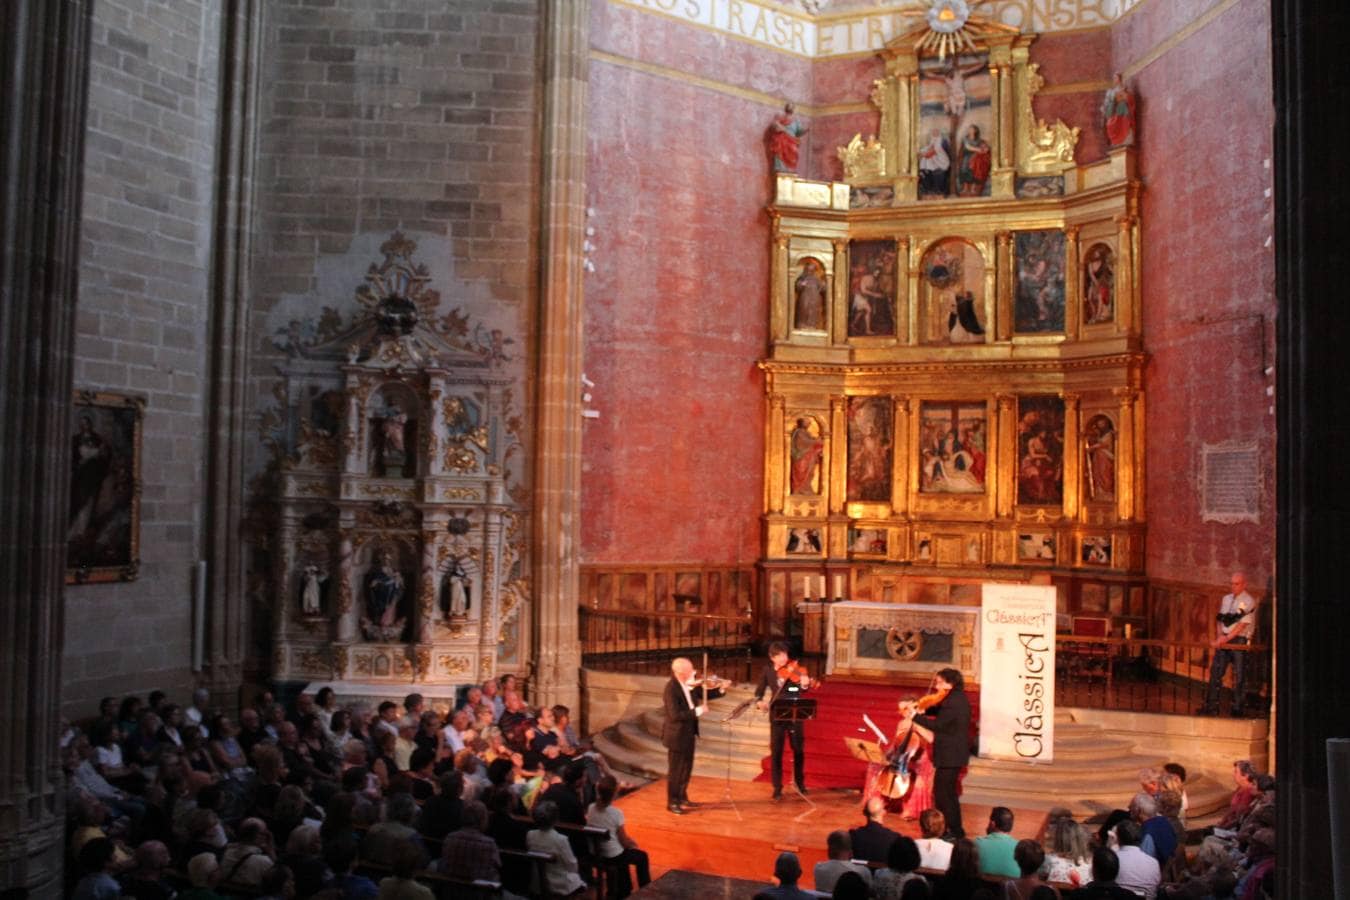 Recital de La Real Cámara en el monasterio de La Piedad de Casalarreina abriendo el Festival de Música Antigua Clássica,